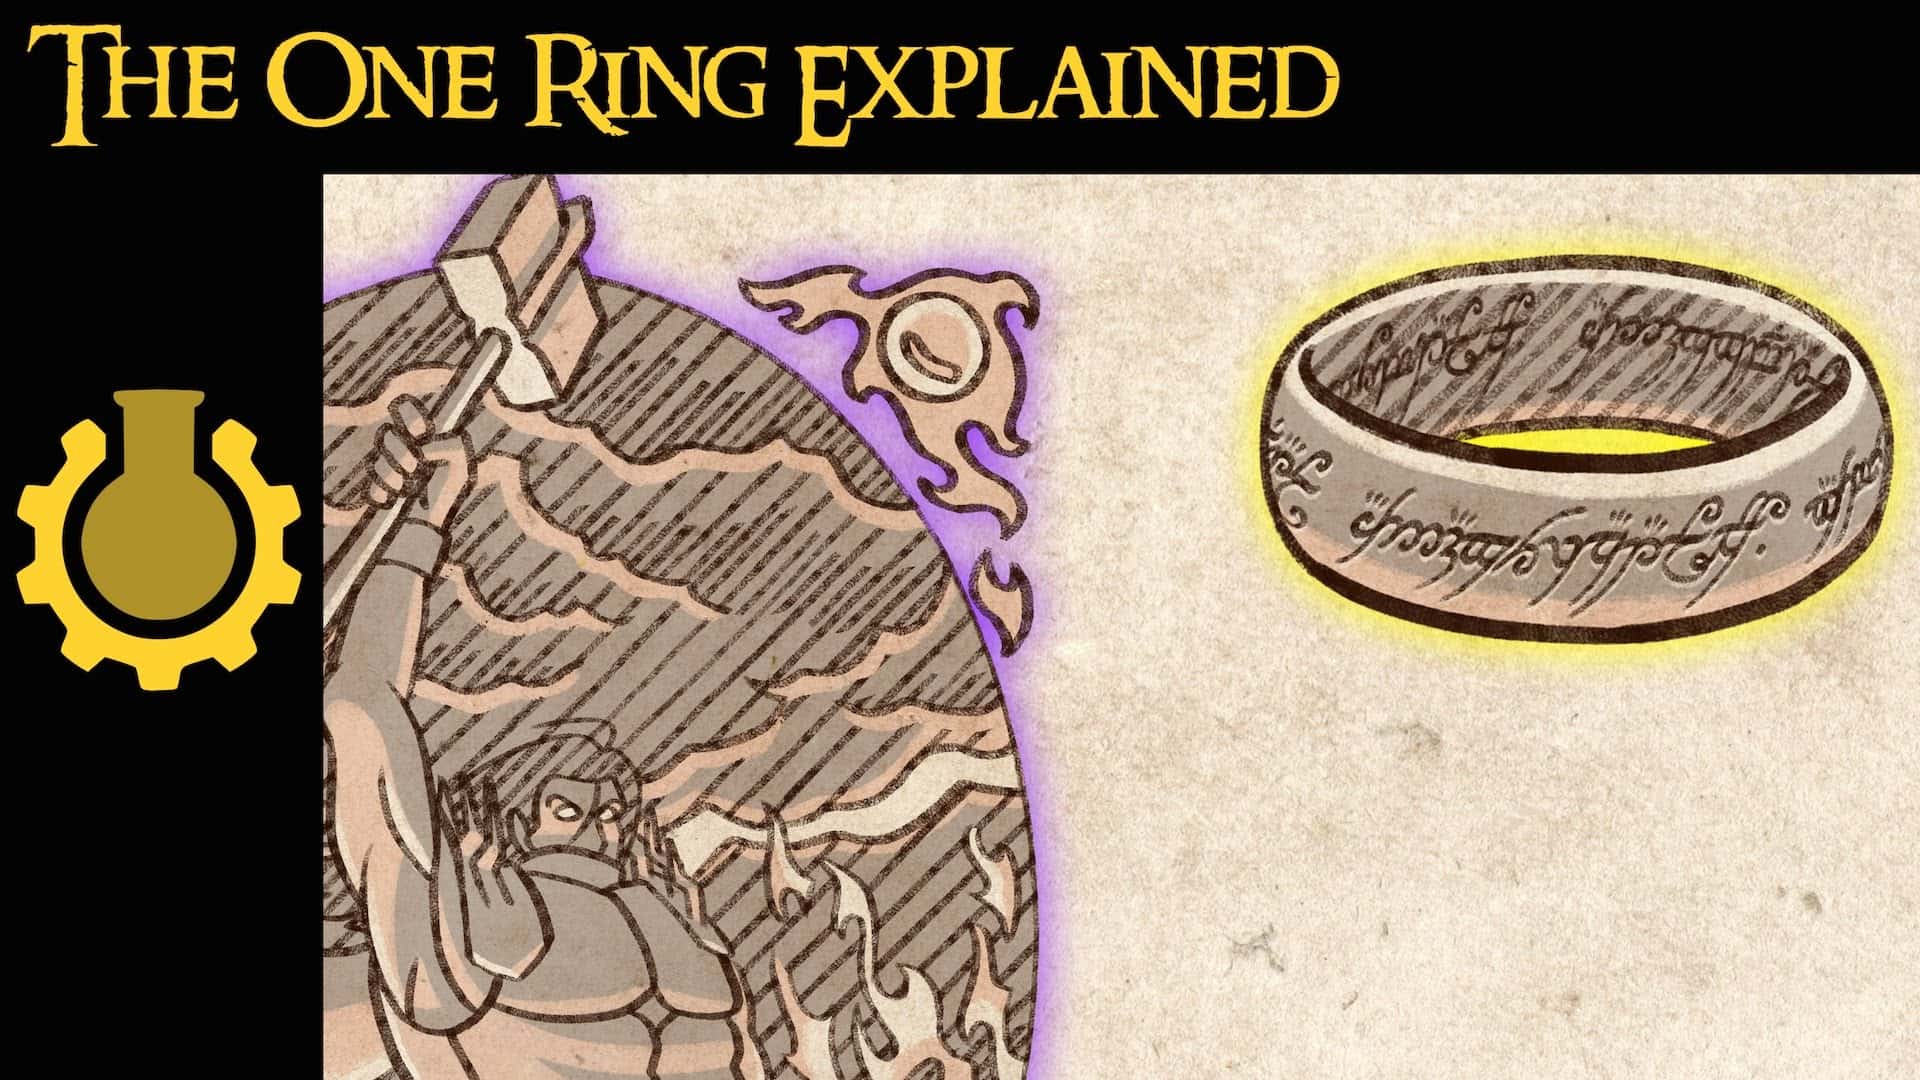 Den ena ringens krafter förklaras